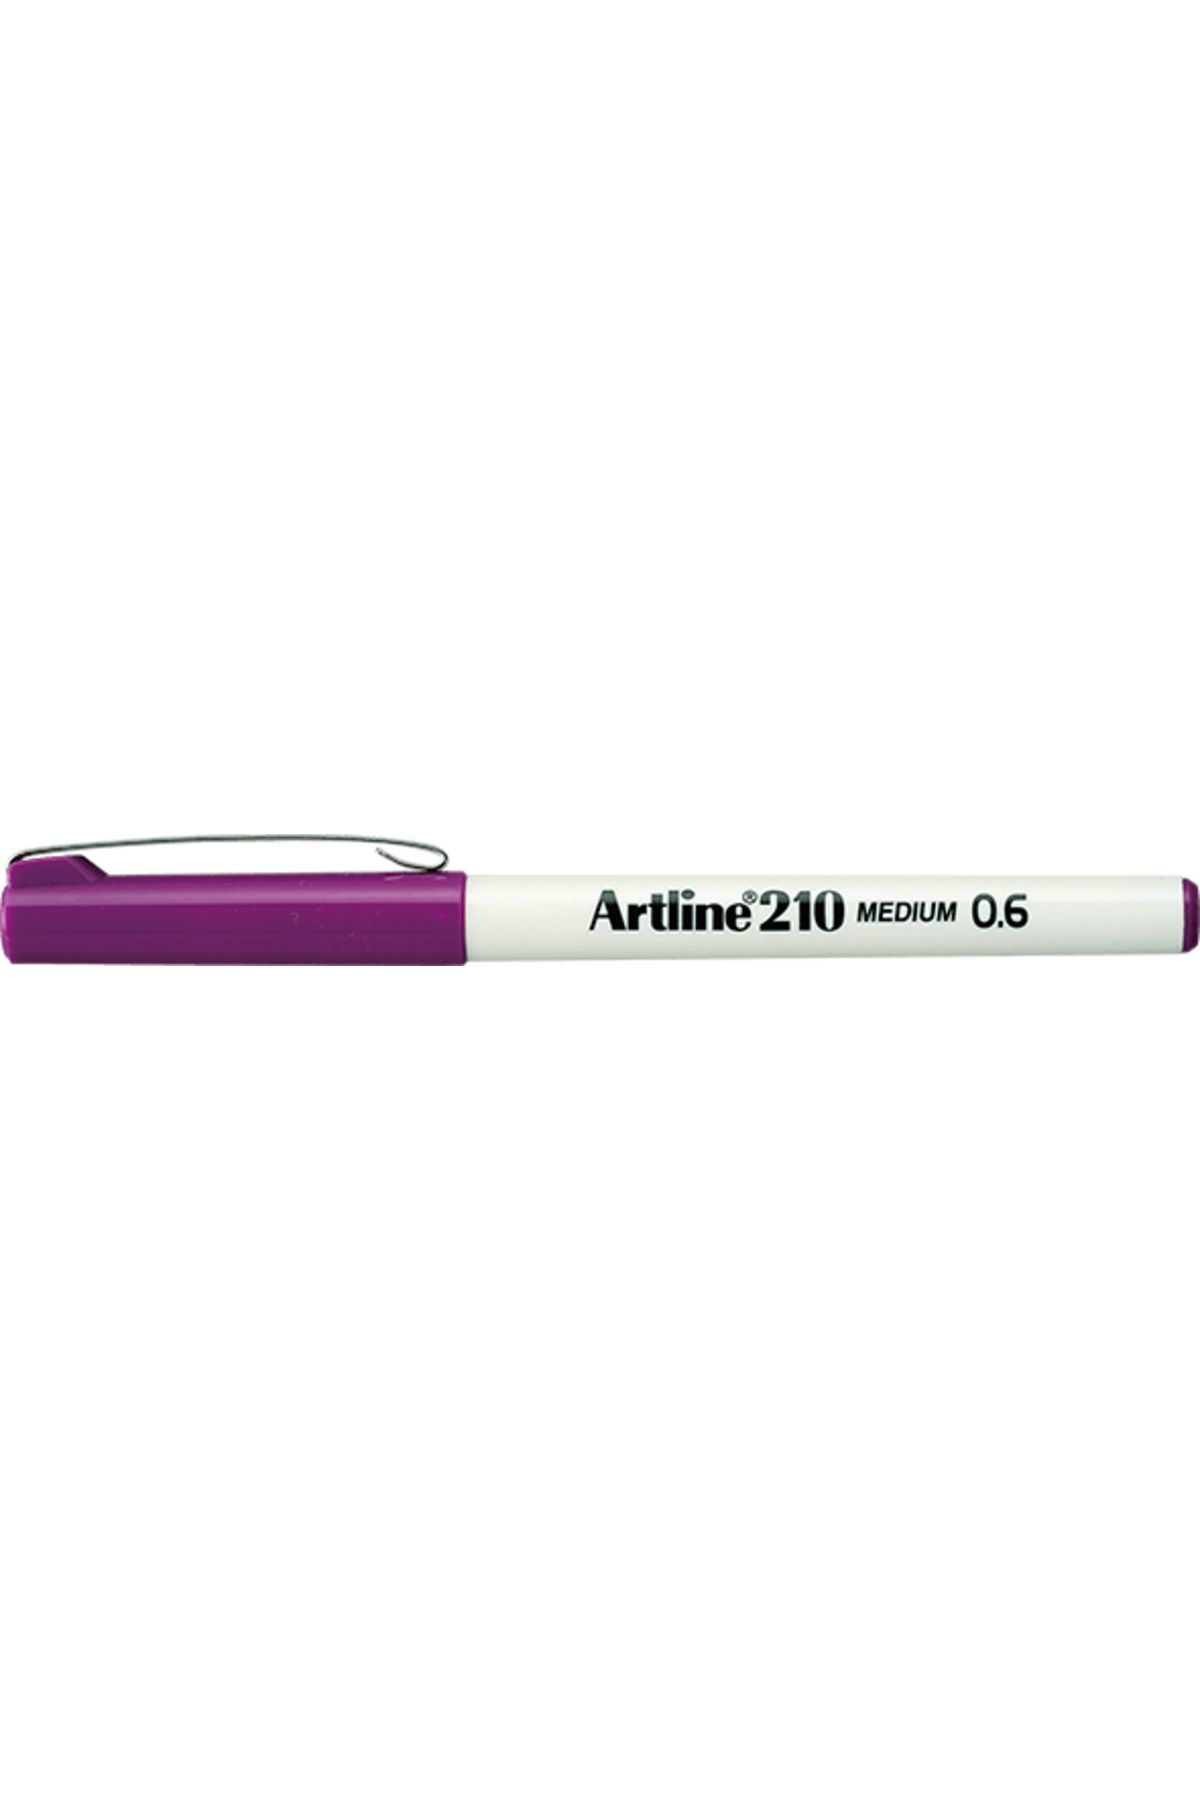 artline 210 Keçe Uçlu Kalem 0.6mm Medium Liner Magenta